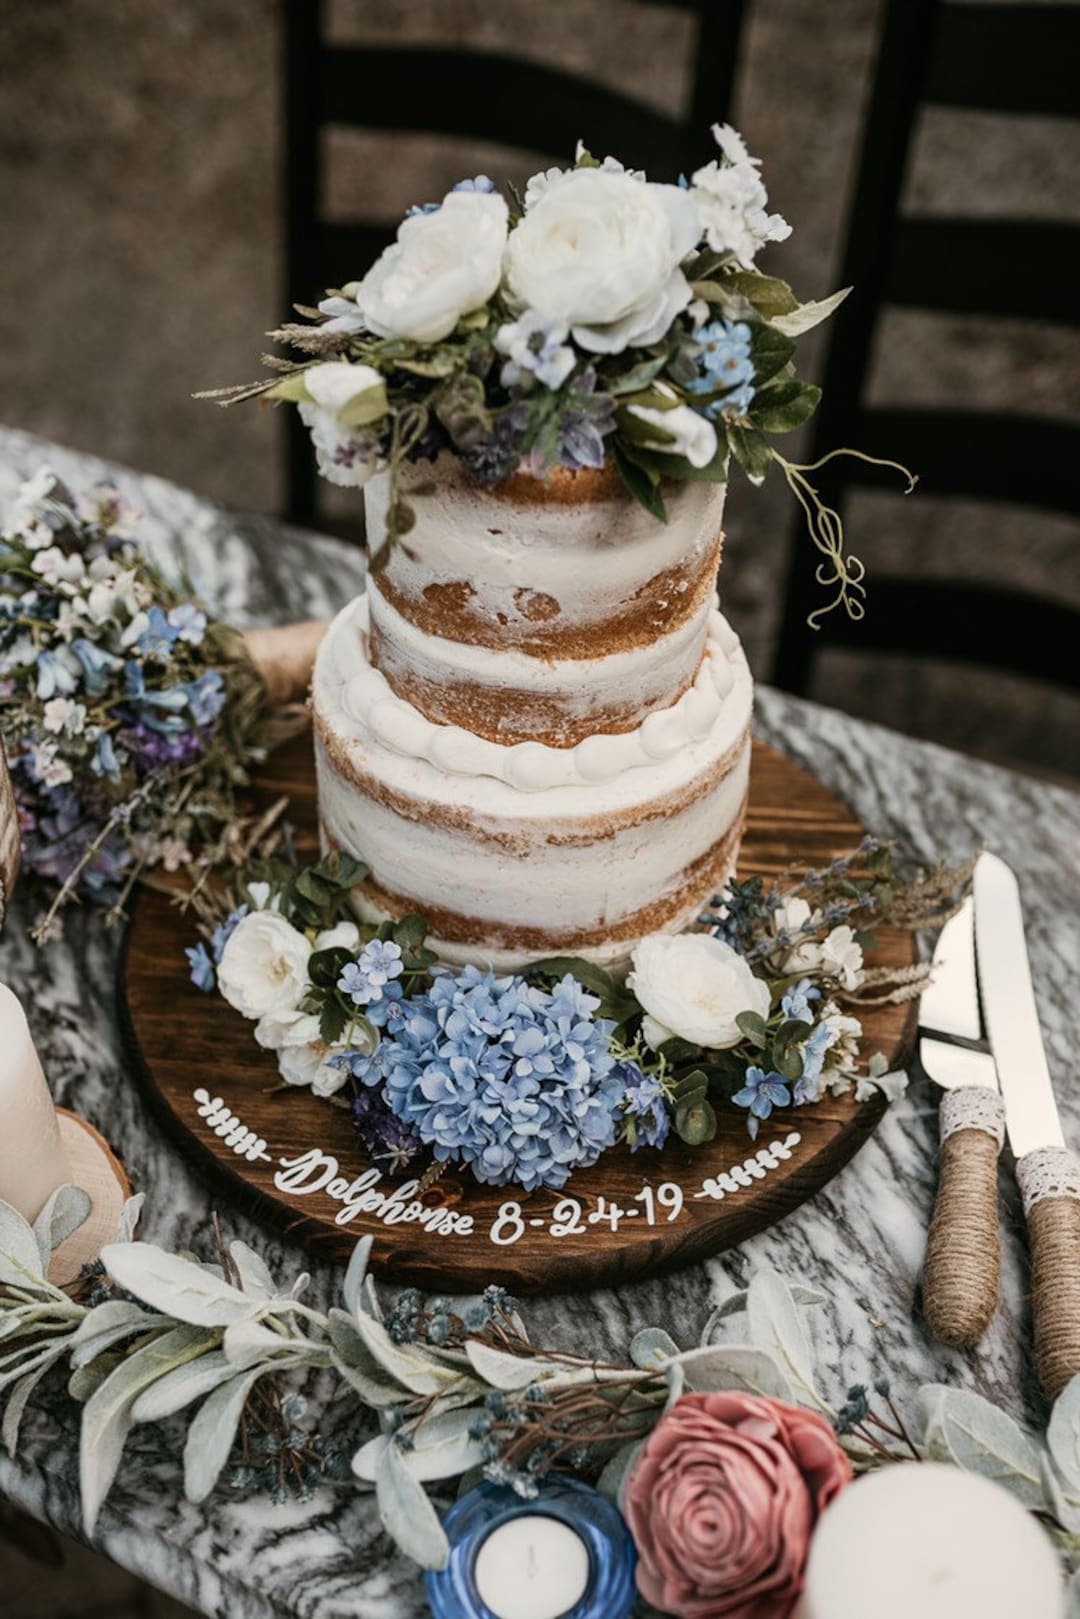 Masculino azul e branco  Cake decorating tips, Hand painted wedding cake,  Cake decorating